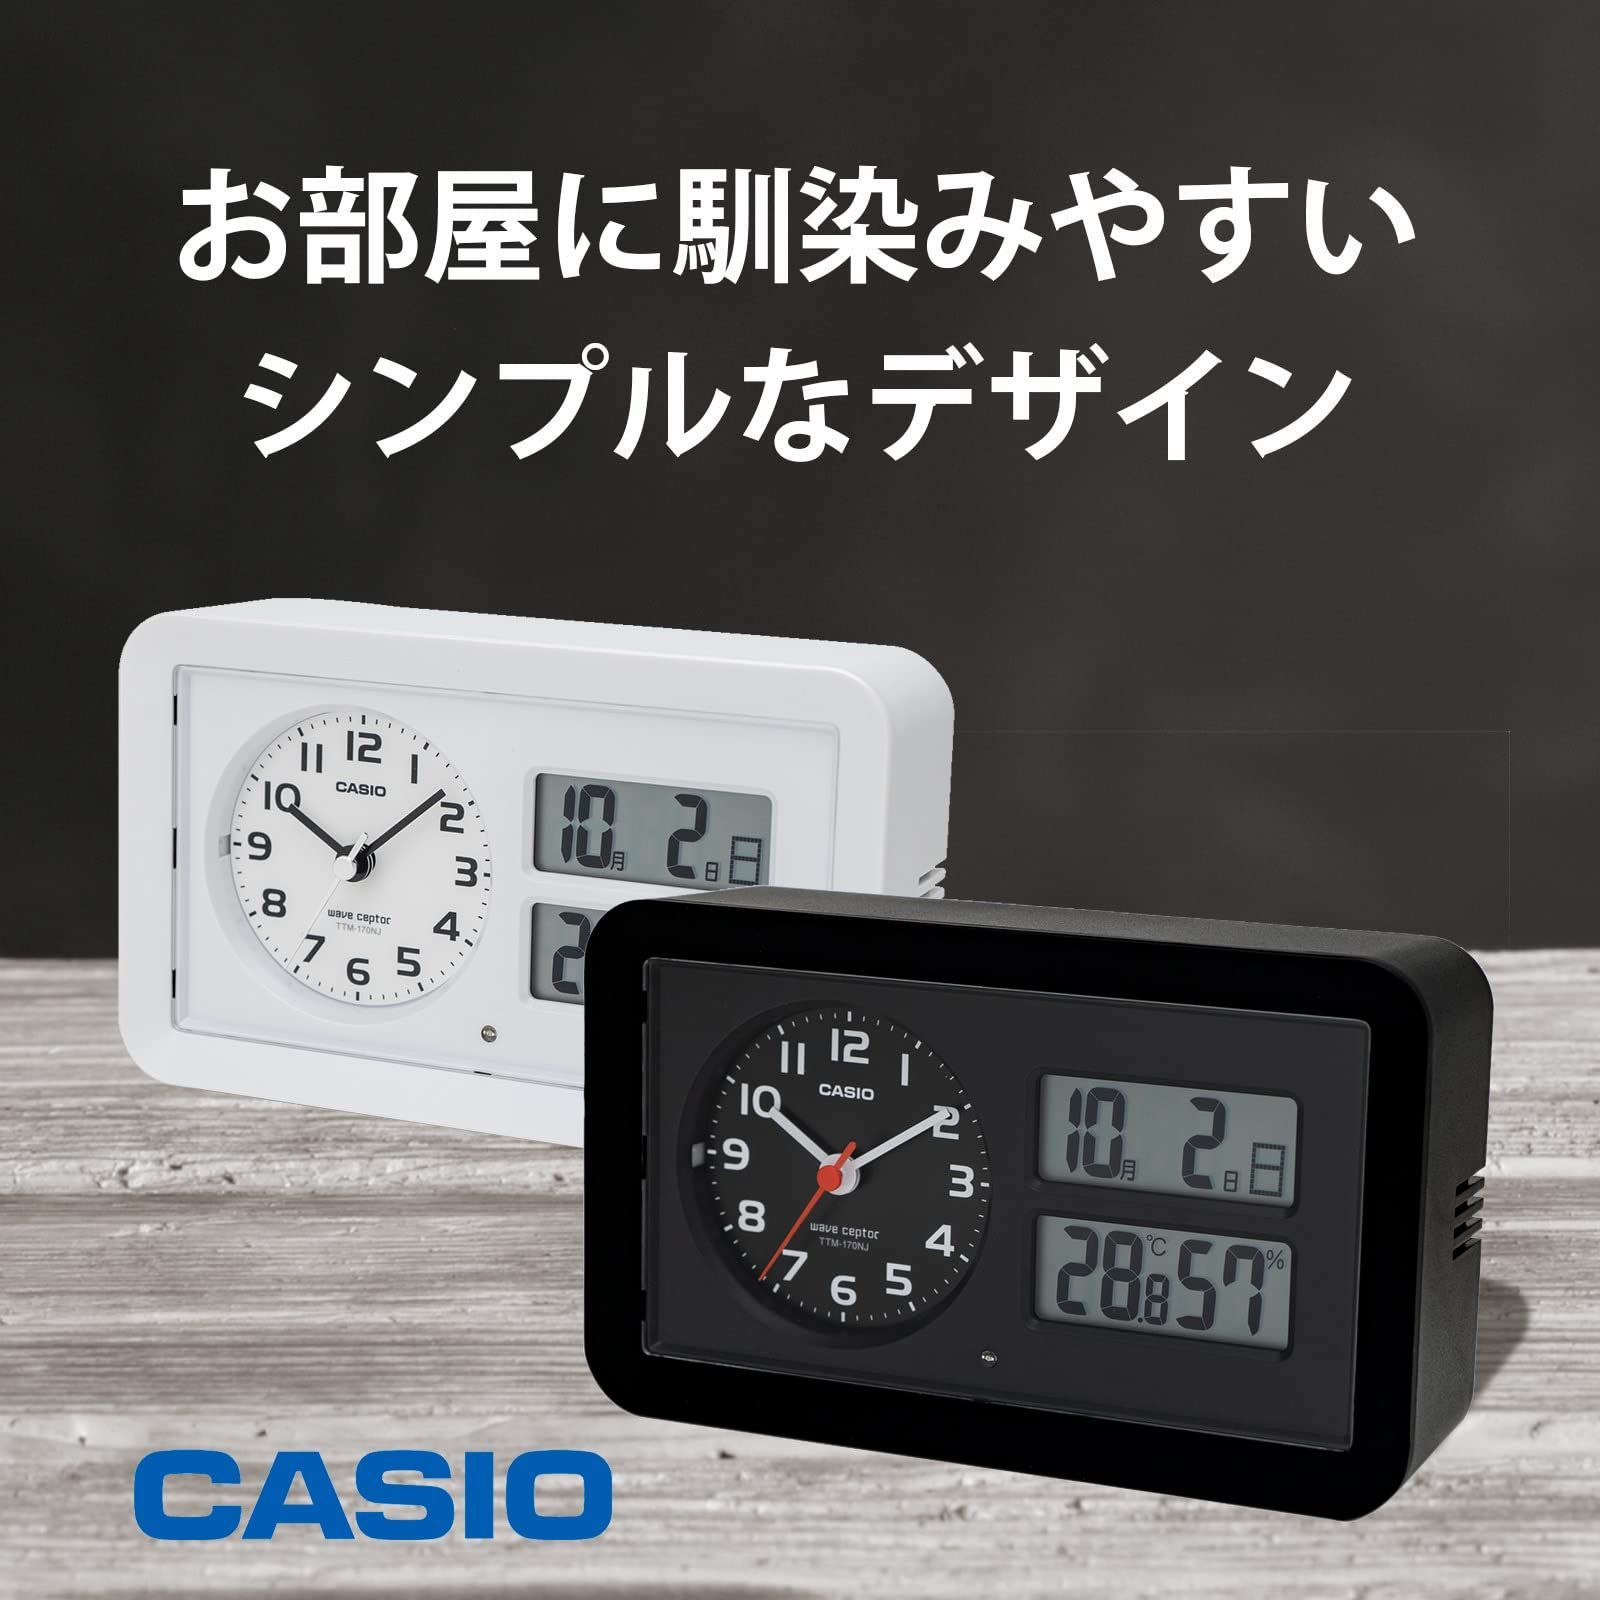 【色: ブラック】CASIO(カシオ) 目覚まし時計 電波 黒 アナログ スヌー